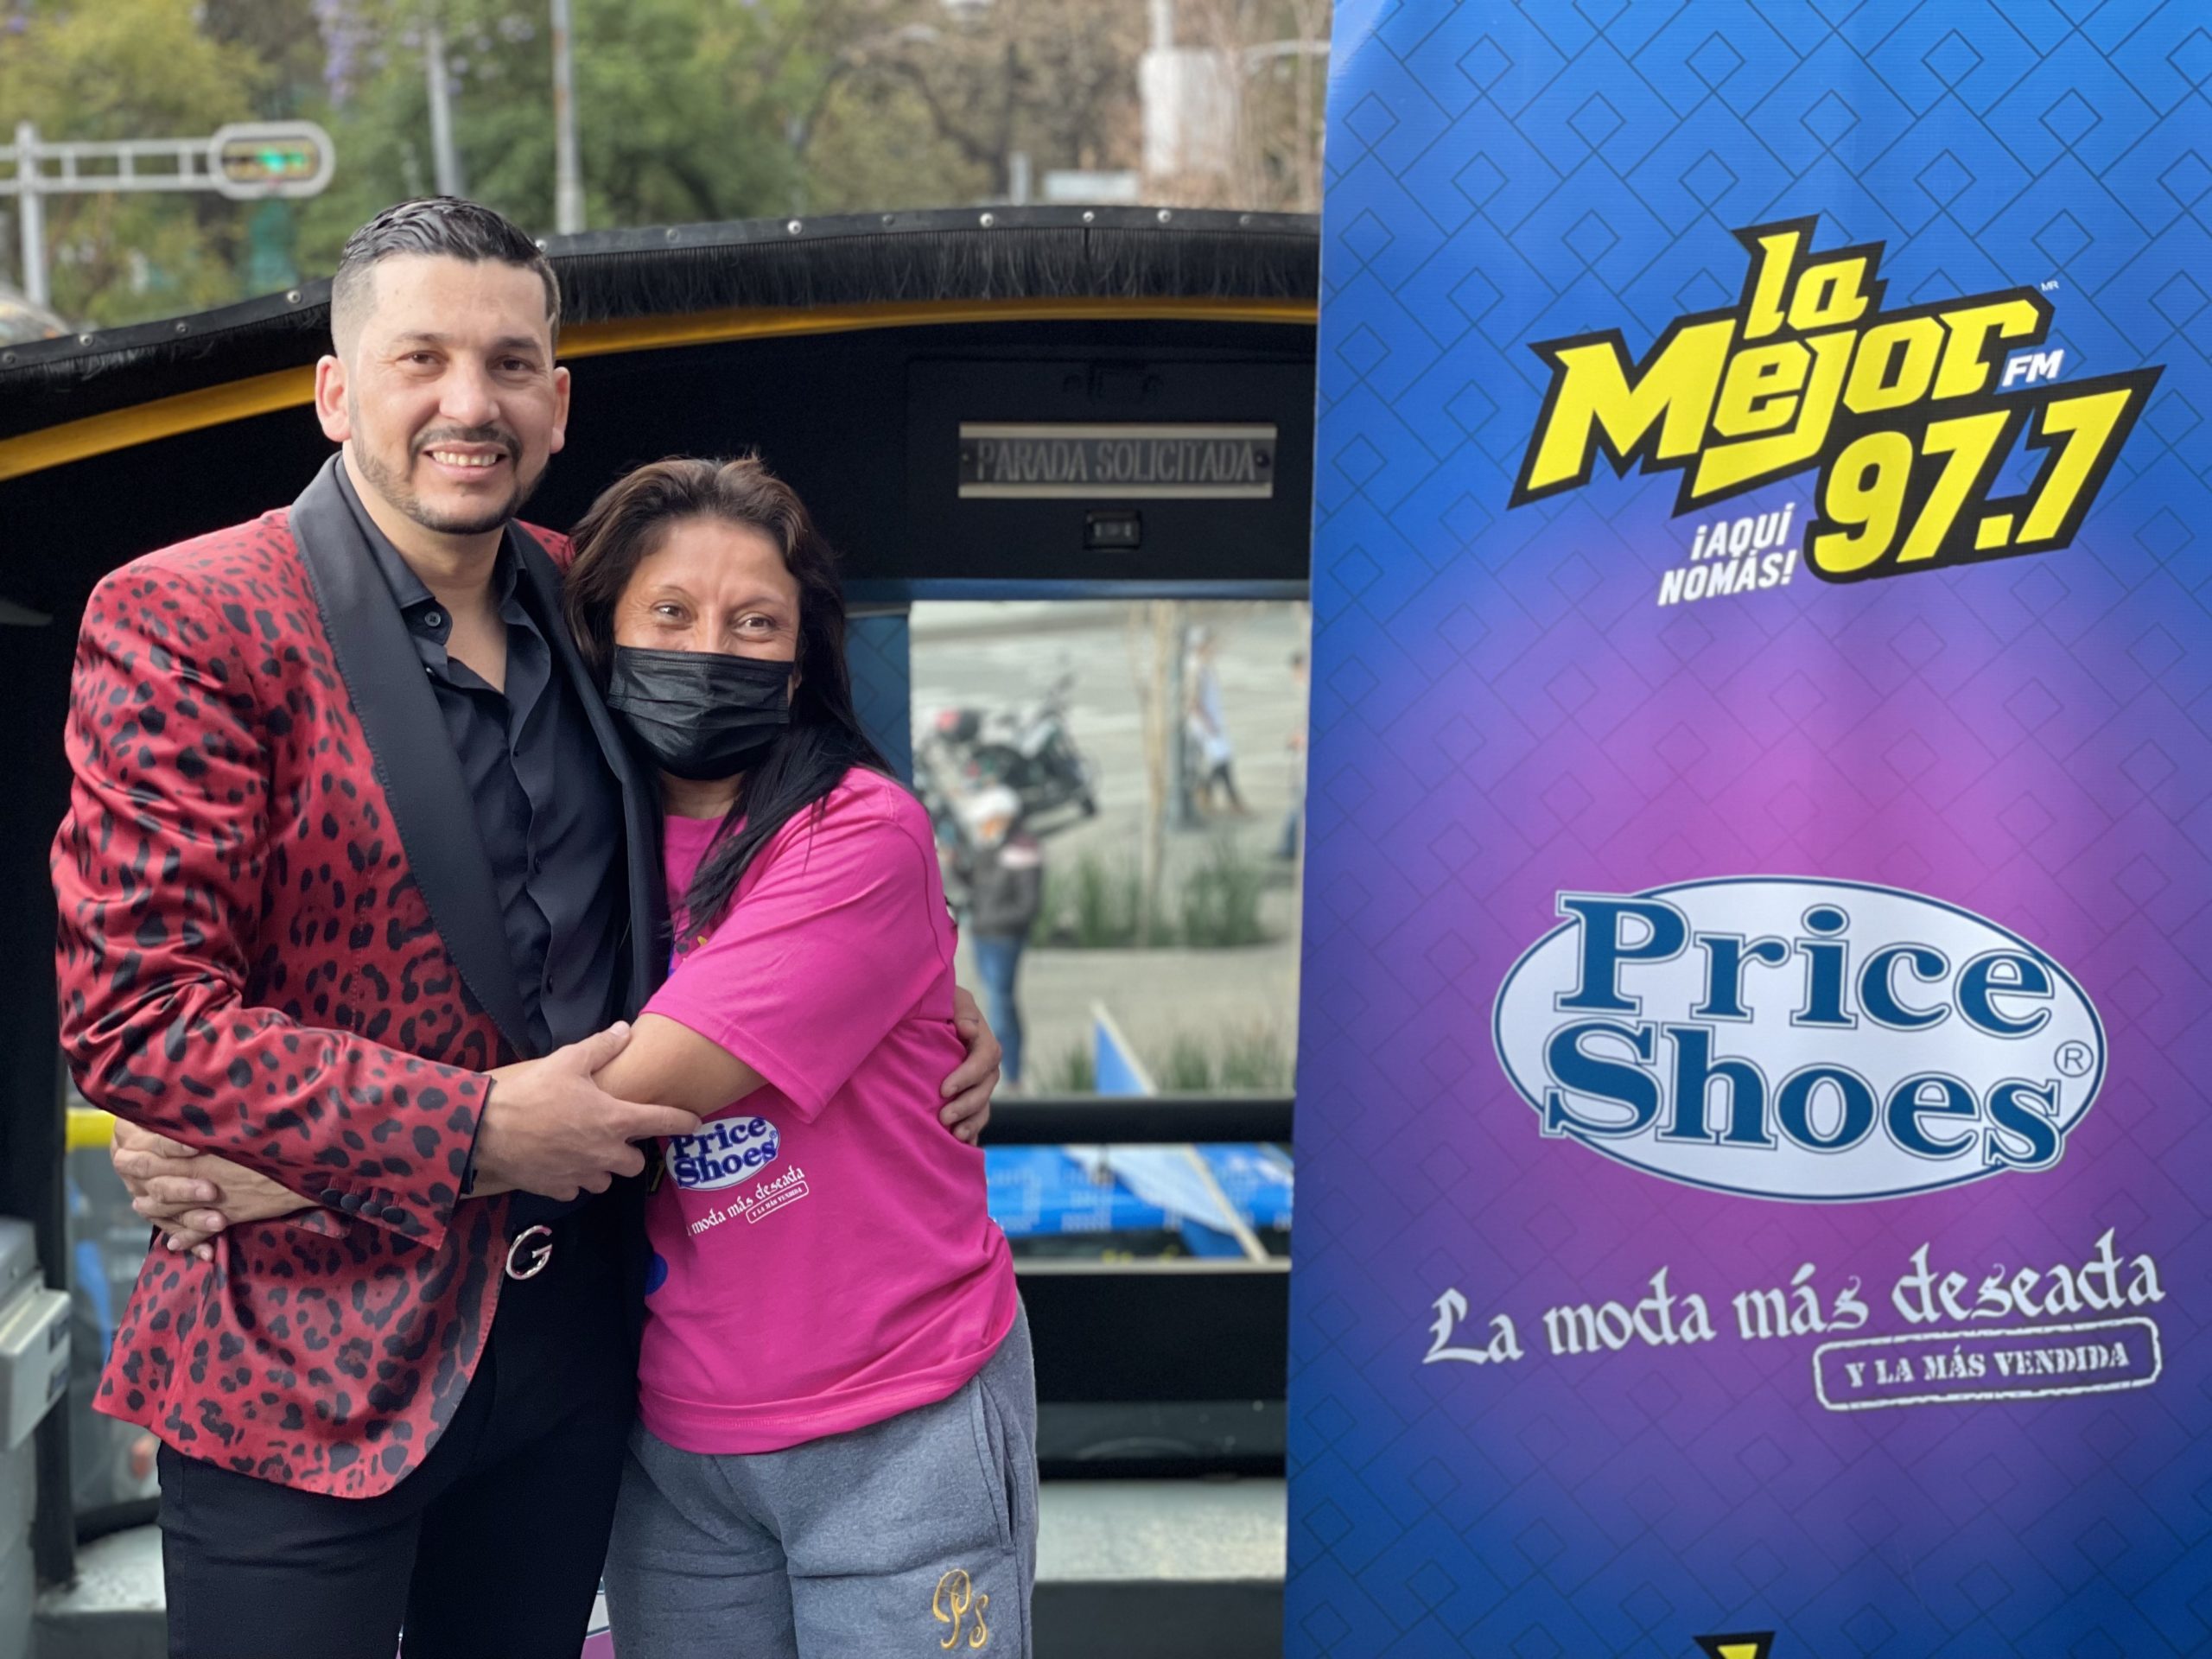 Ganadores de la foto con Luis Ángel “El Flaco” en La Carabanda del Amor de La Mejor FM 97.7